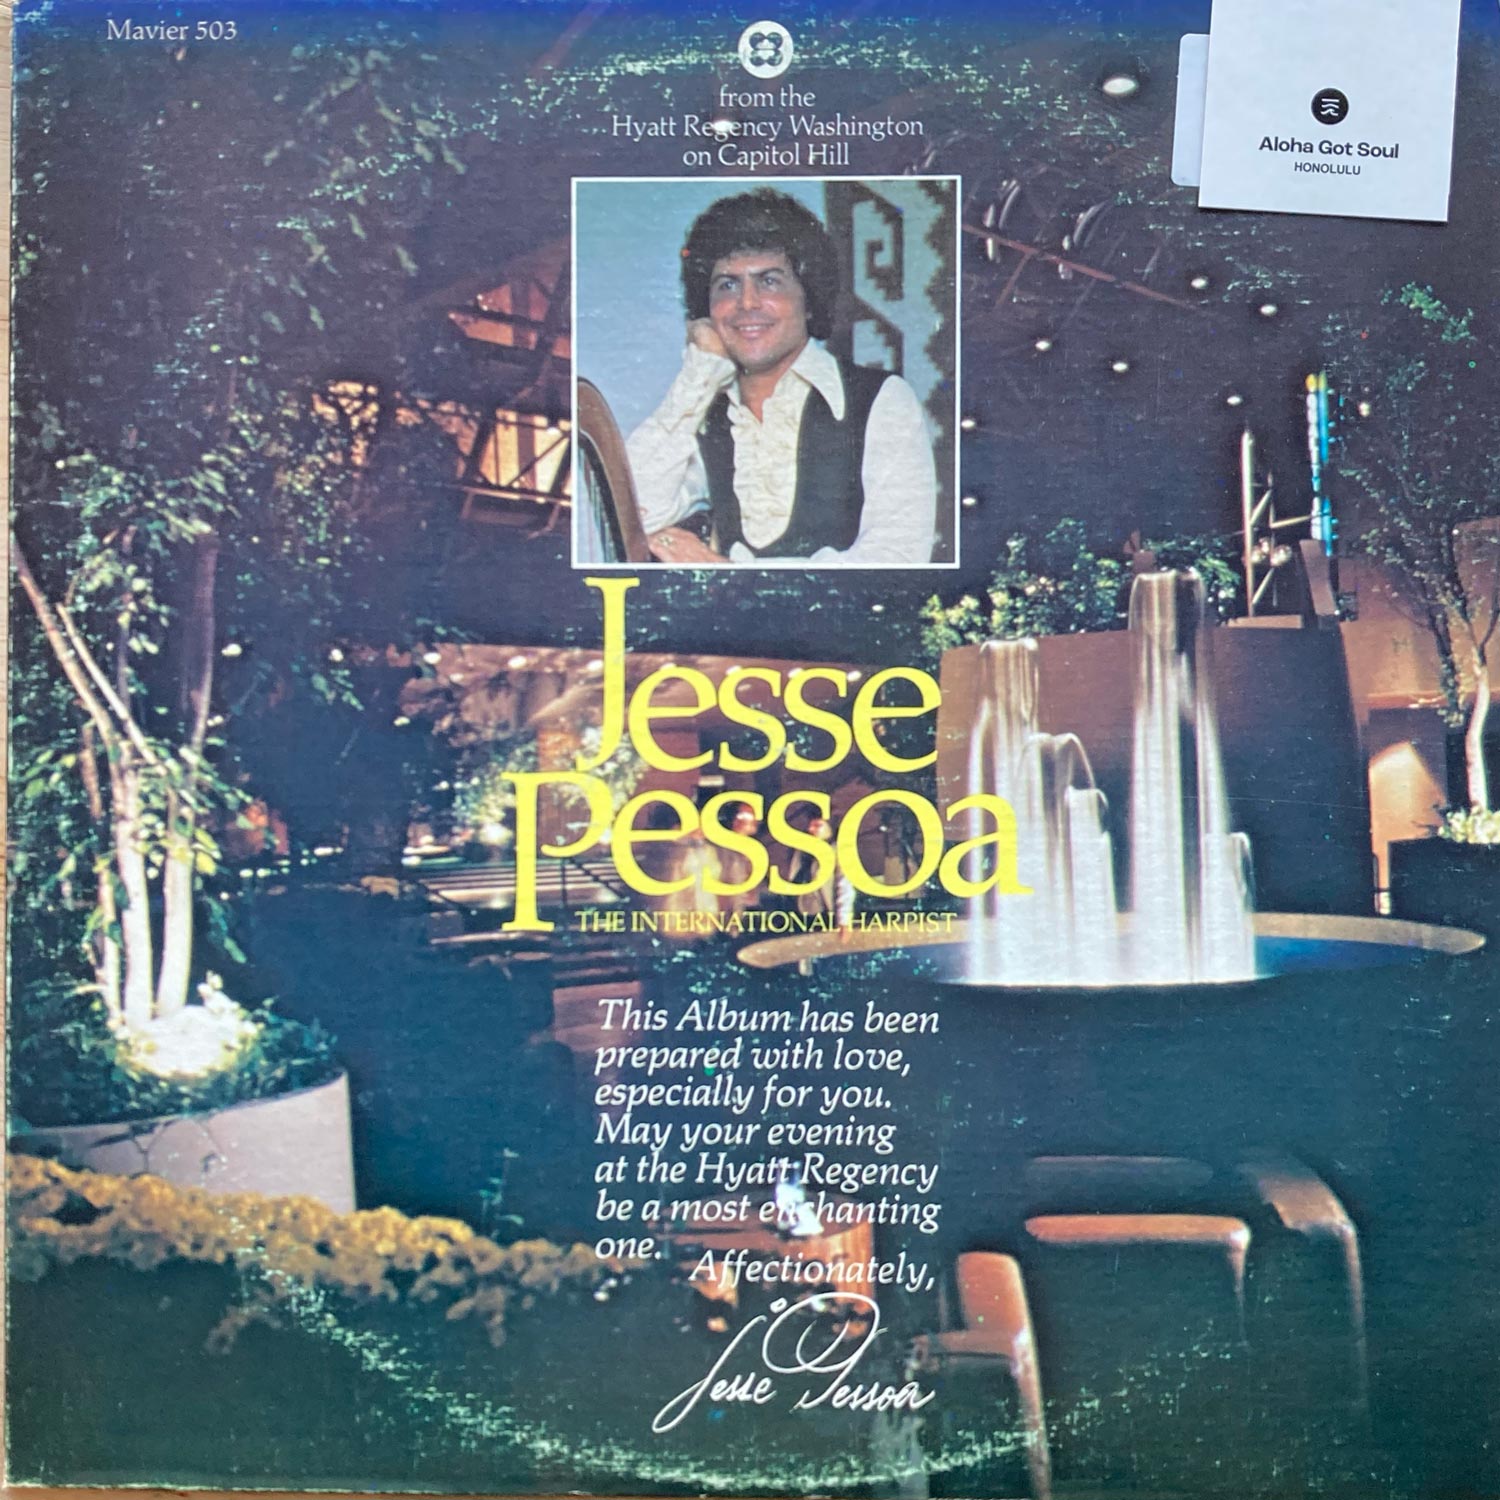 Jesse Pessoa - The International Harpist